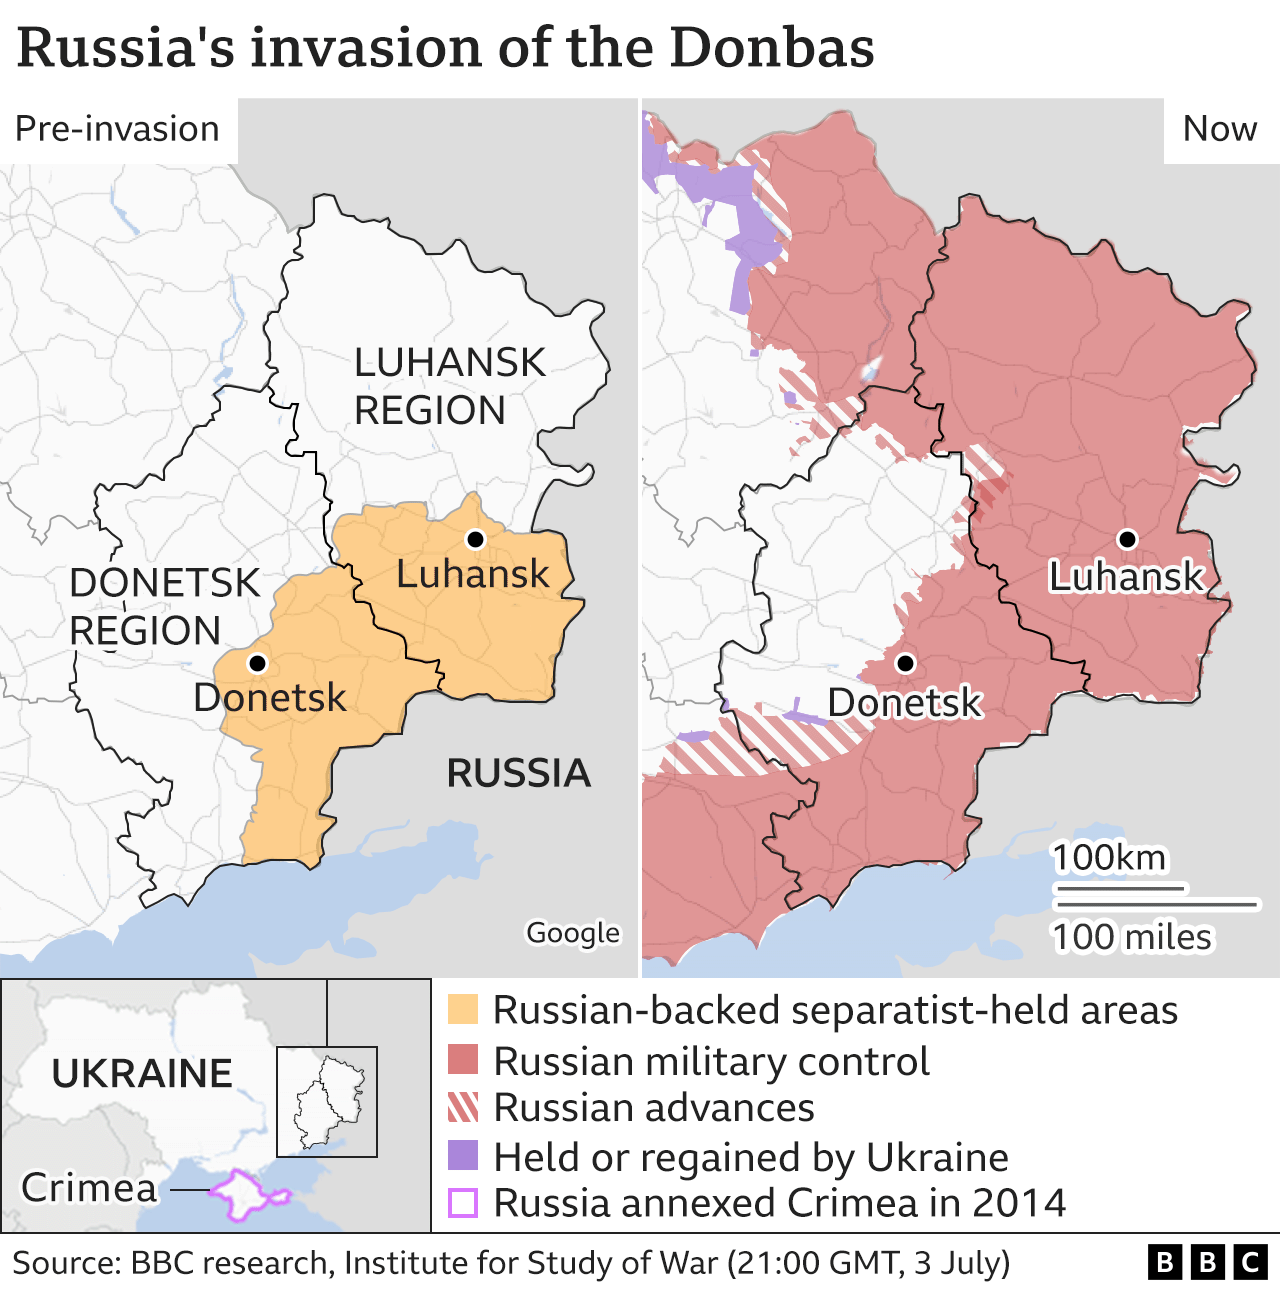 Donbas control